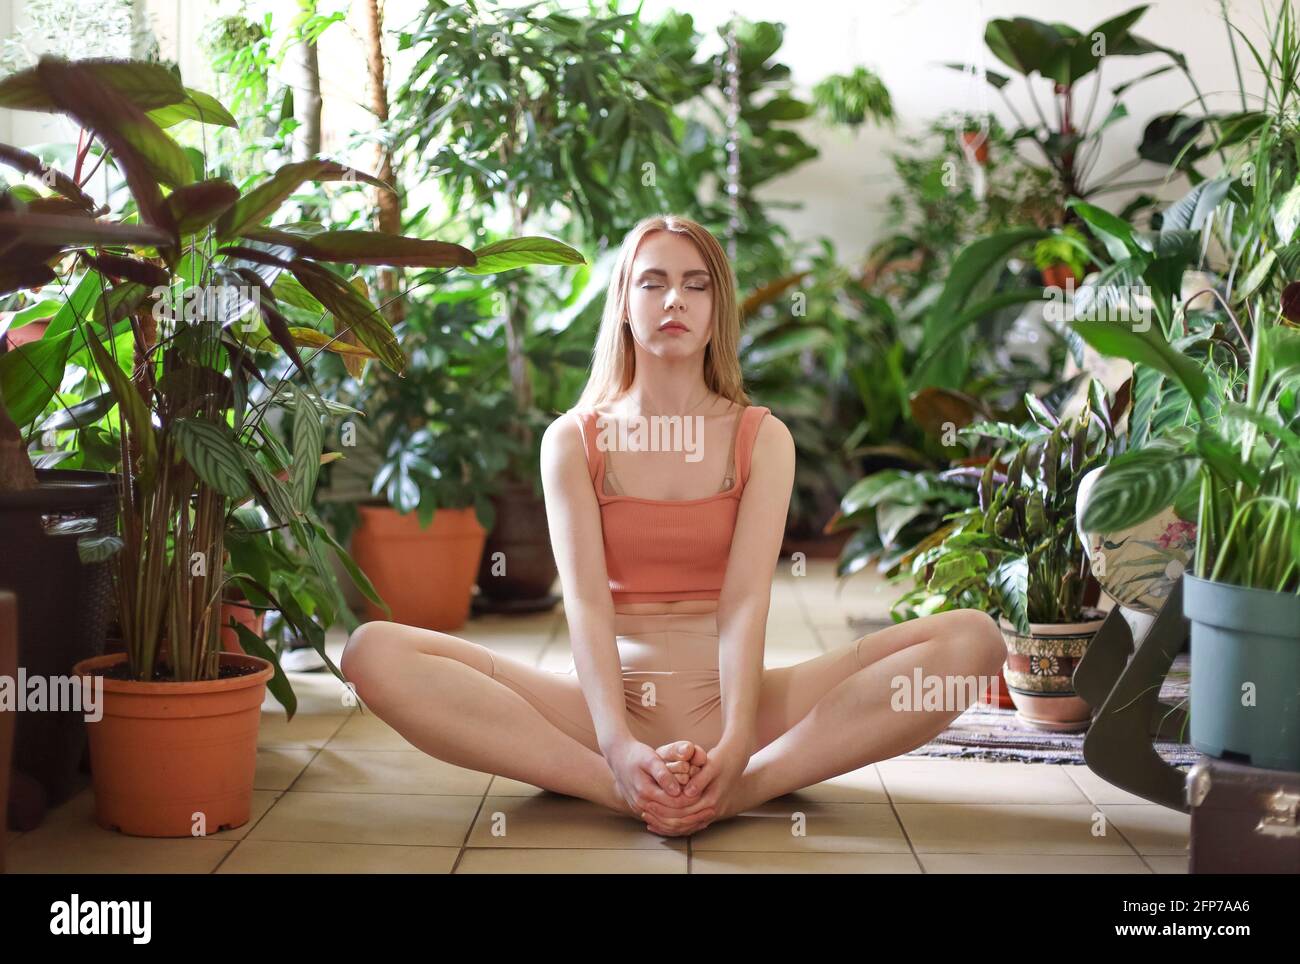 Junge gesunde Frau in Sportkleidung, die im Wohnzimmer Yoga praktiziert Mit Topfpflanzen Stockfoto